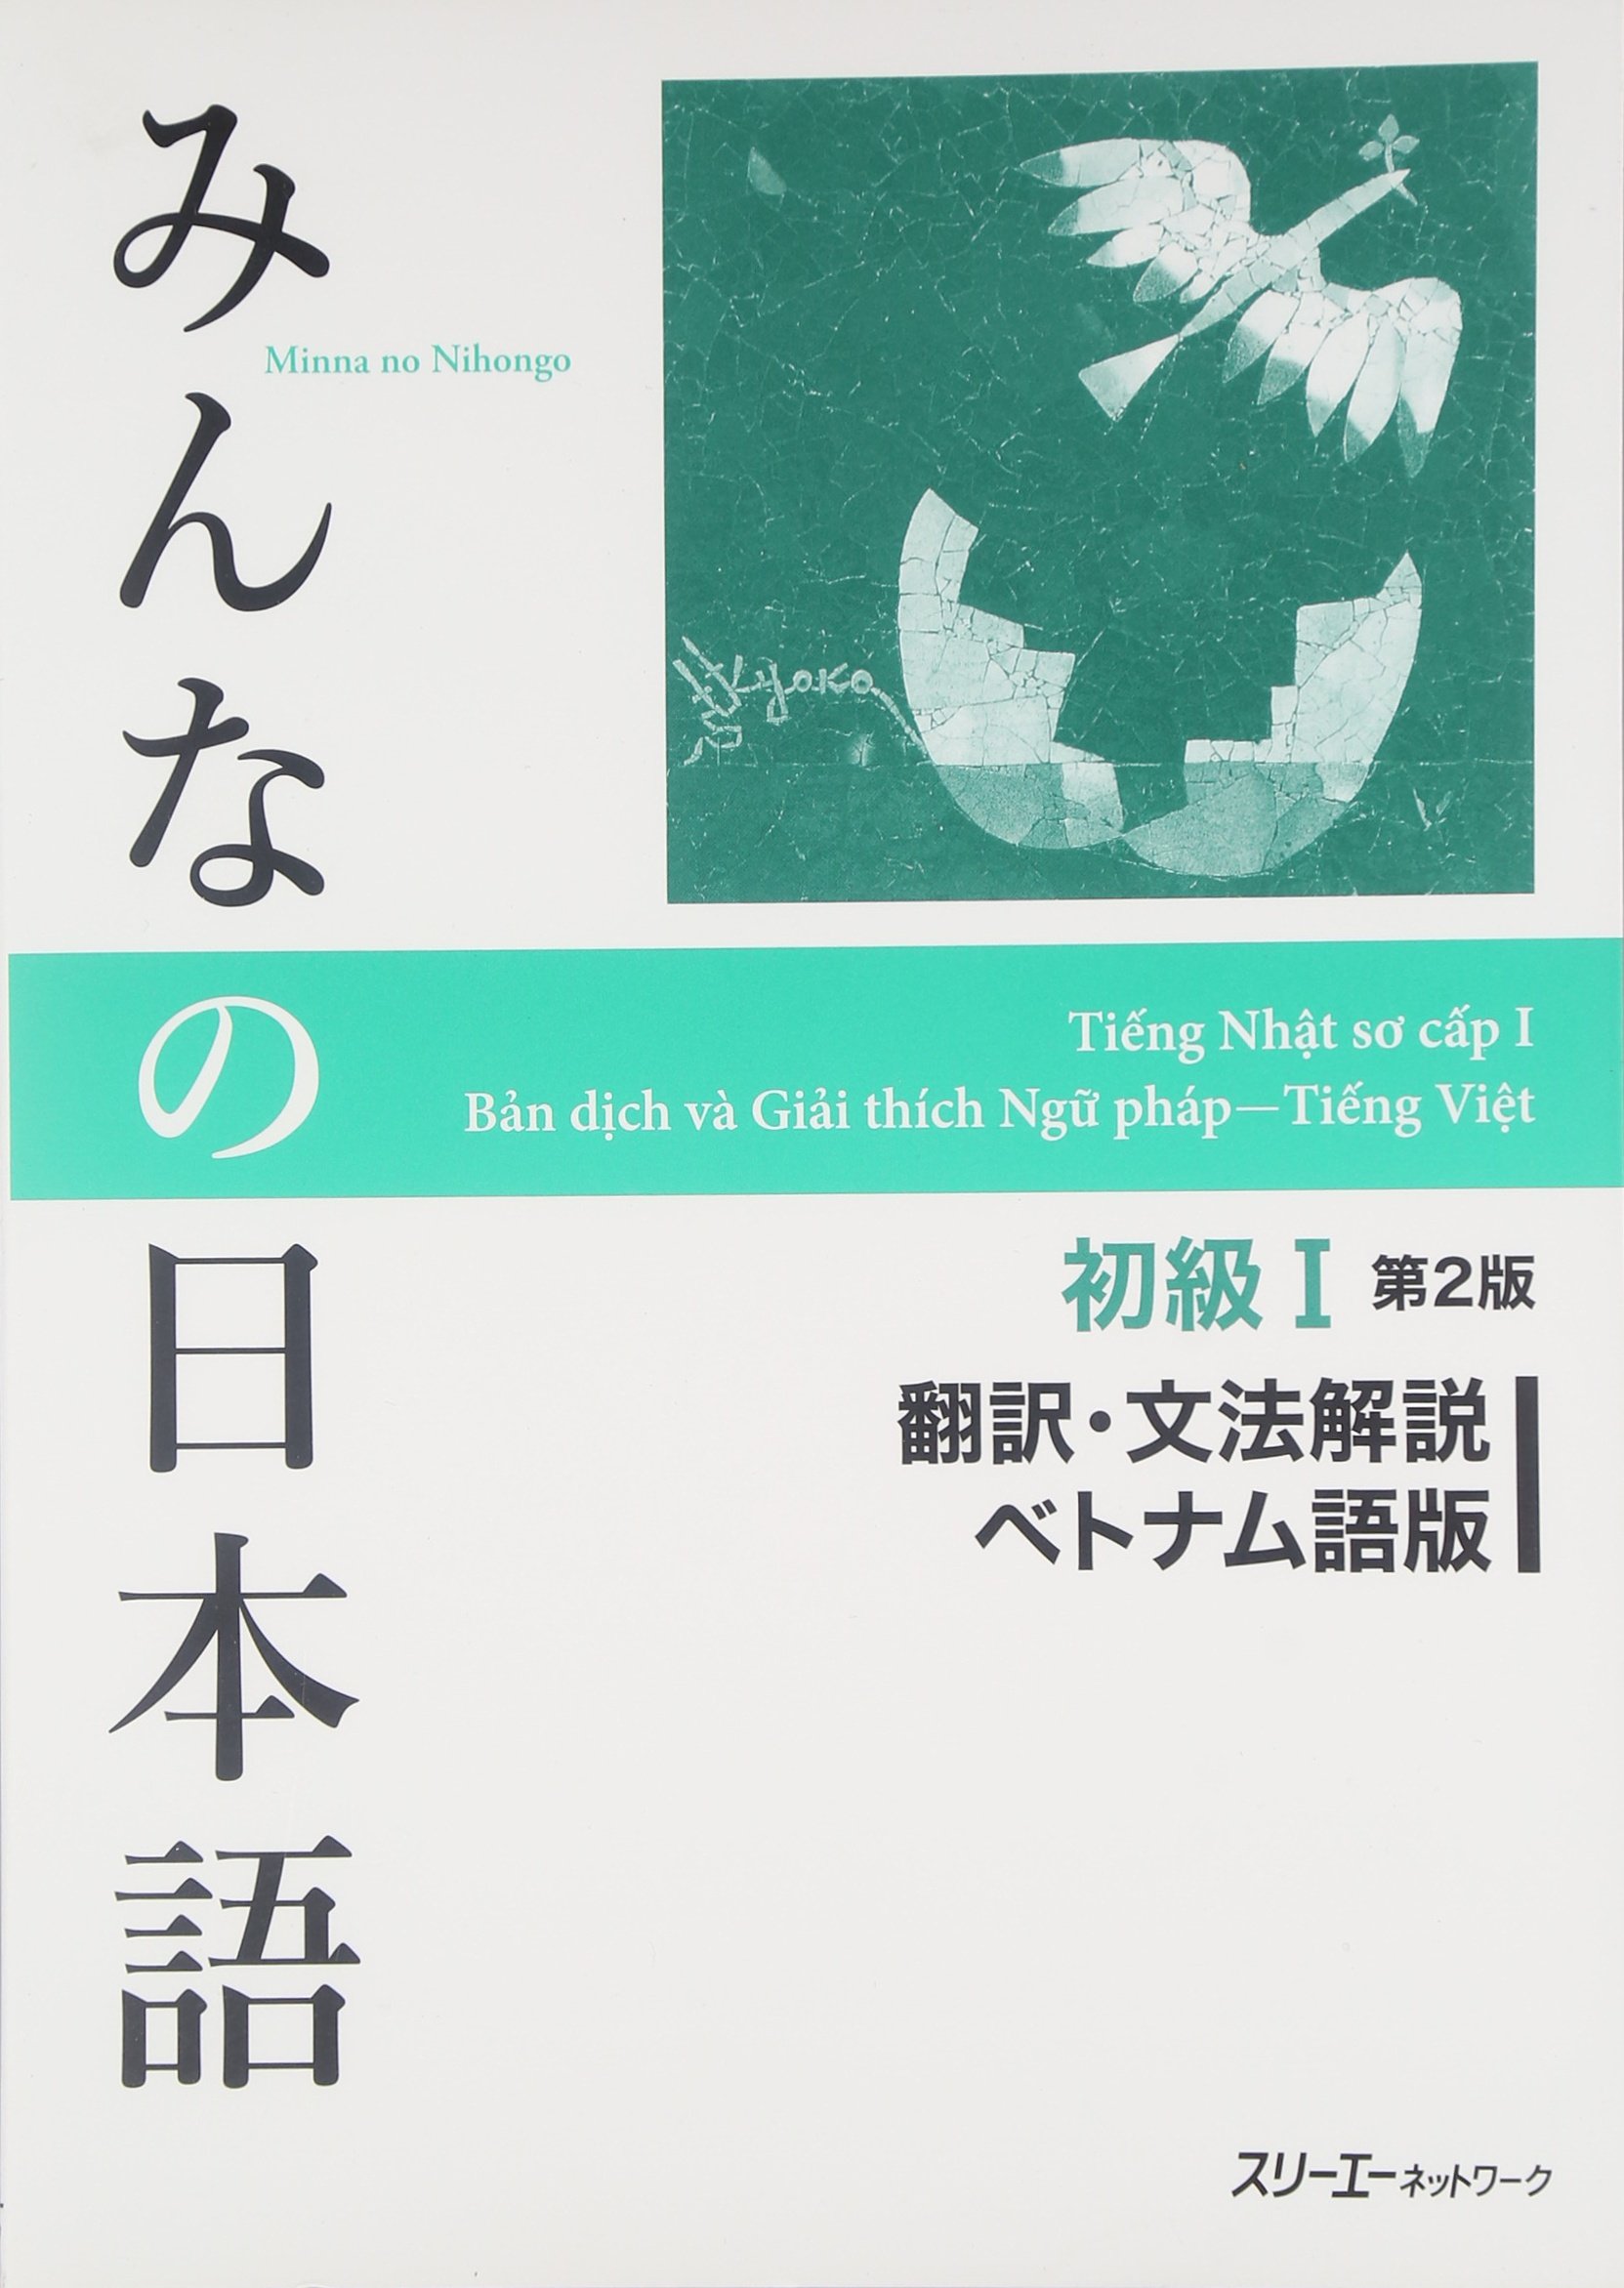 Giáo trình Minna no Nihongo  I - Bản dịch và giải thích ngữ pháp ( Bản tiếng Việt)